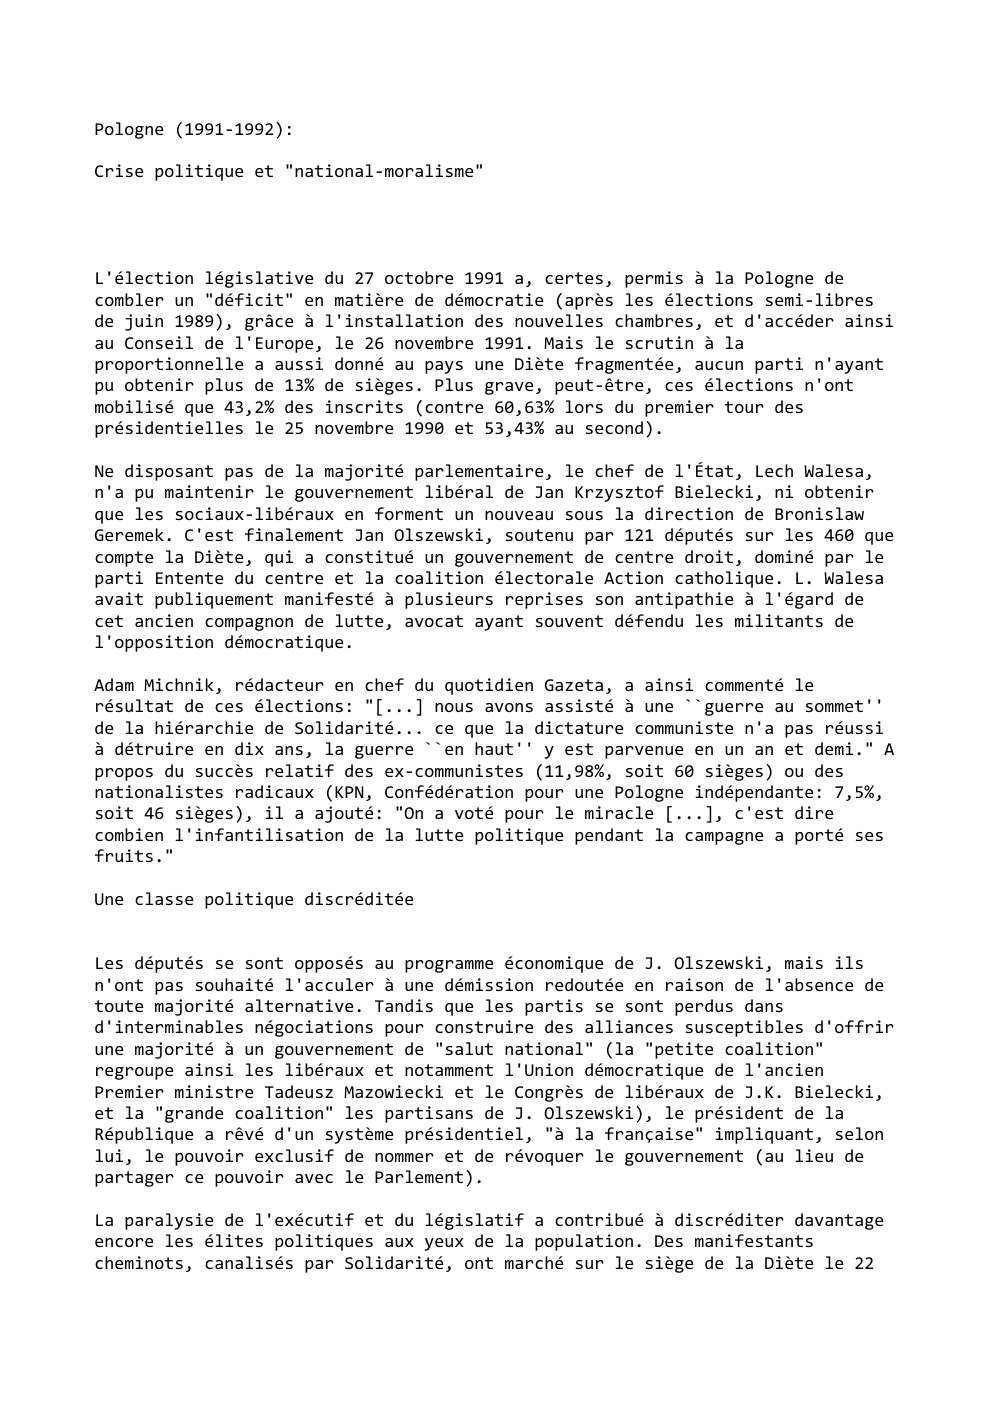 Prévisualisation du document Pologne (1991-1992):
Crise politique et "national-moralisme"

L'élection législative du 27 octobre 1991 a, certes, permis à la Pologne de
combler...